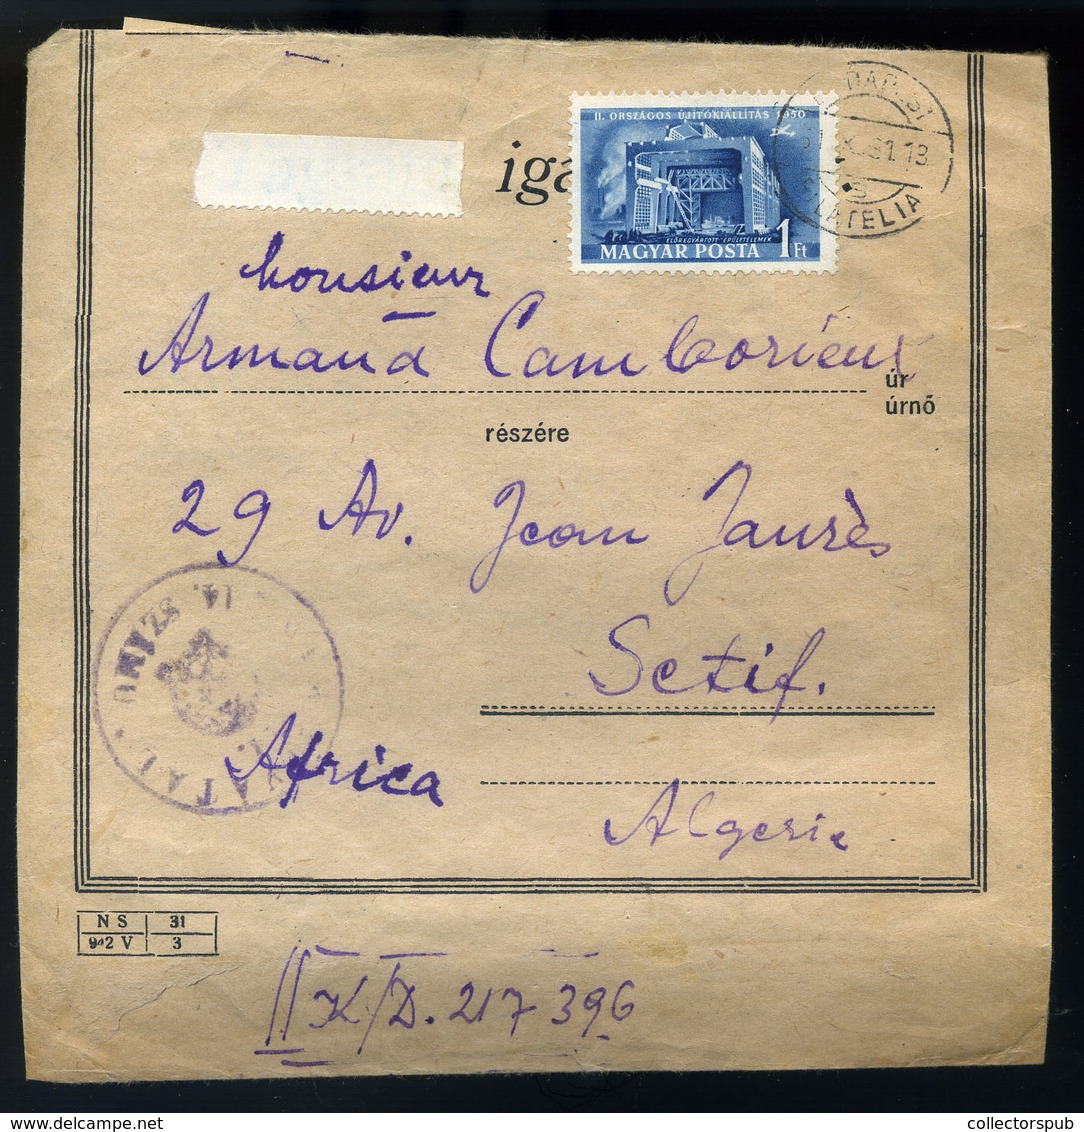 BUDAPEST 1951. Érdekes Küldemény Algériába Küldve  /  Intr. Package To Algeria - Covers & Documents